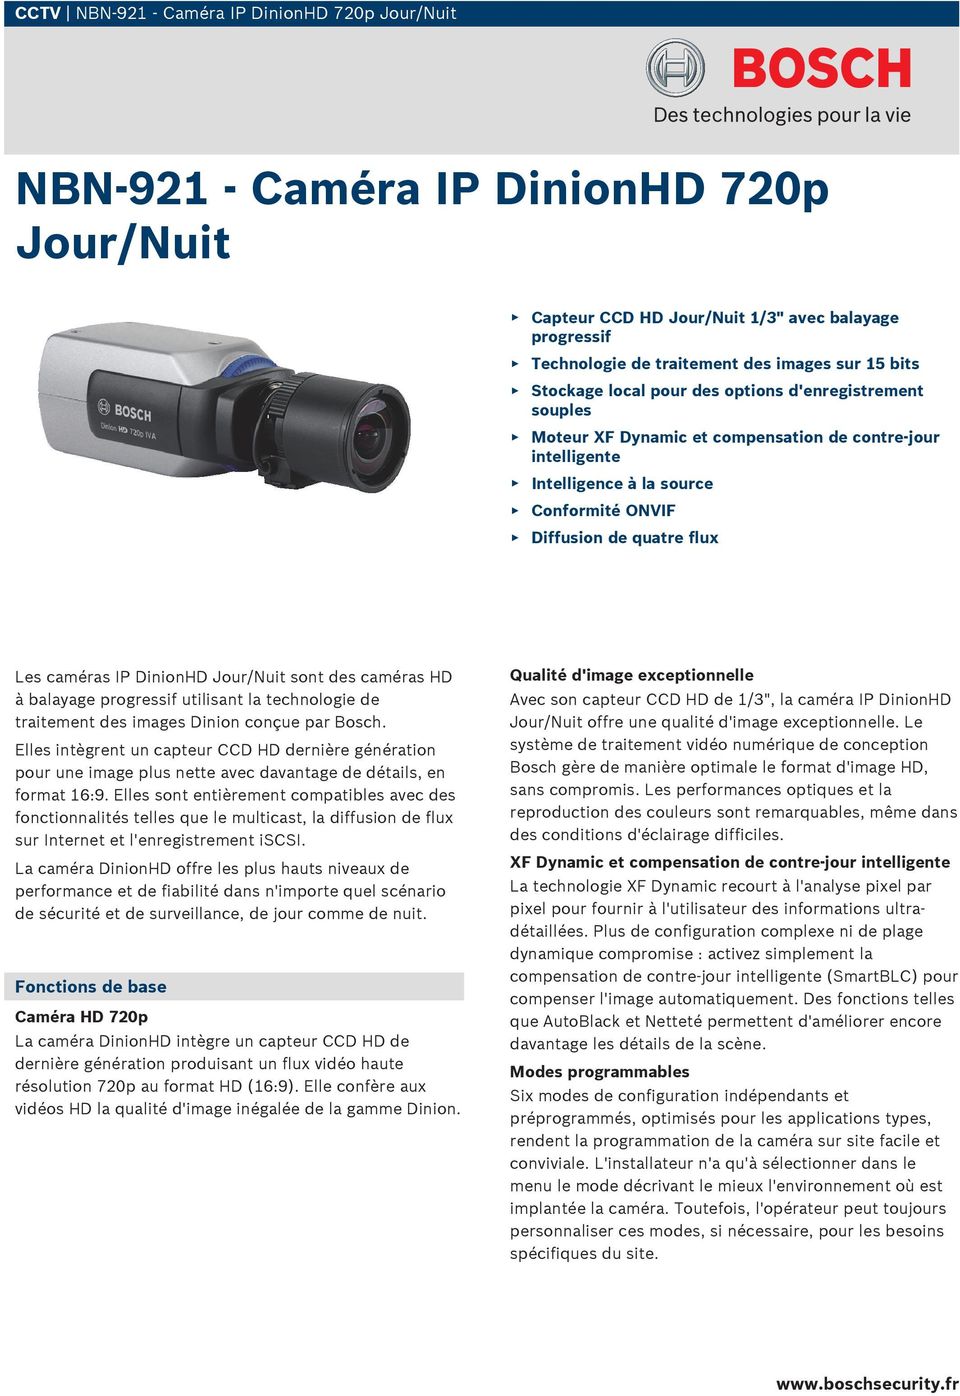 IP DinionHD Jour/Nuit sont des caméras HD à balayage progressif utilisant la technologie de traitement des images Dinion conçue par Bosch.